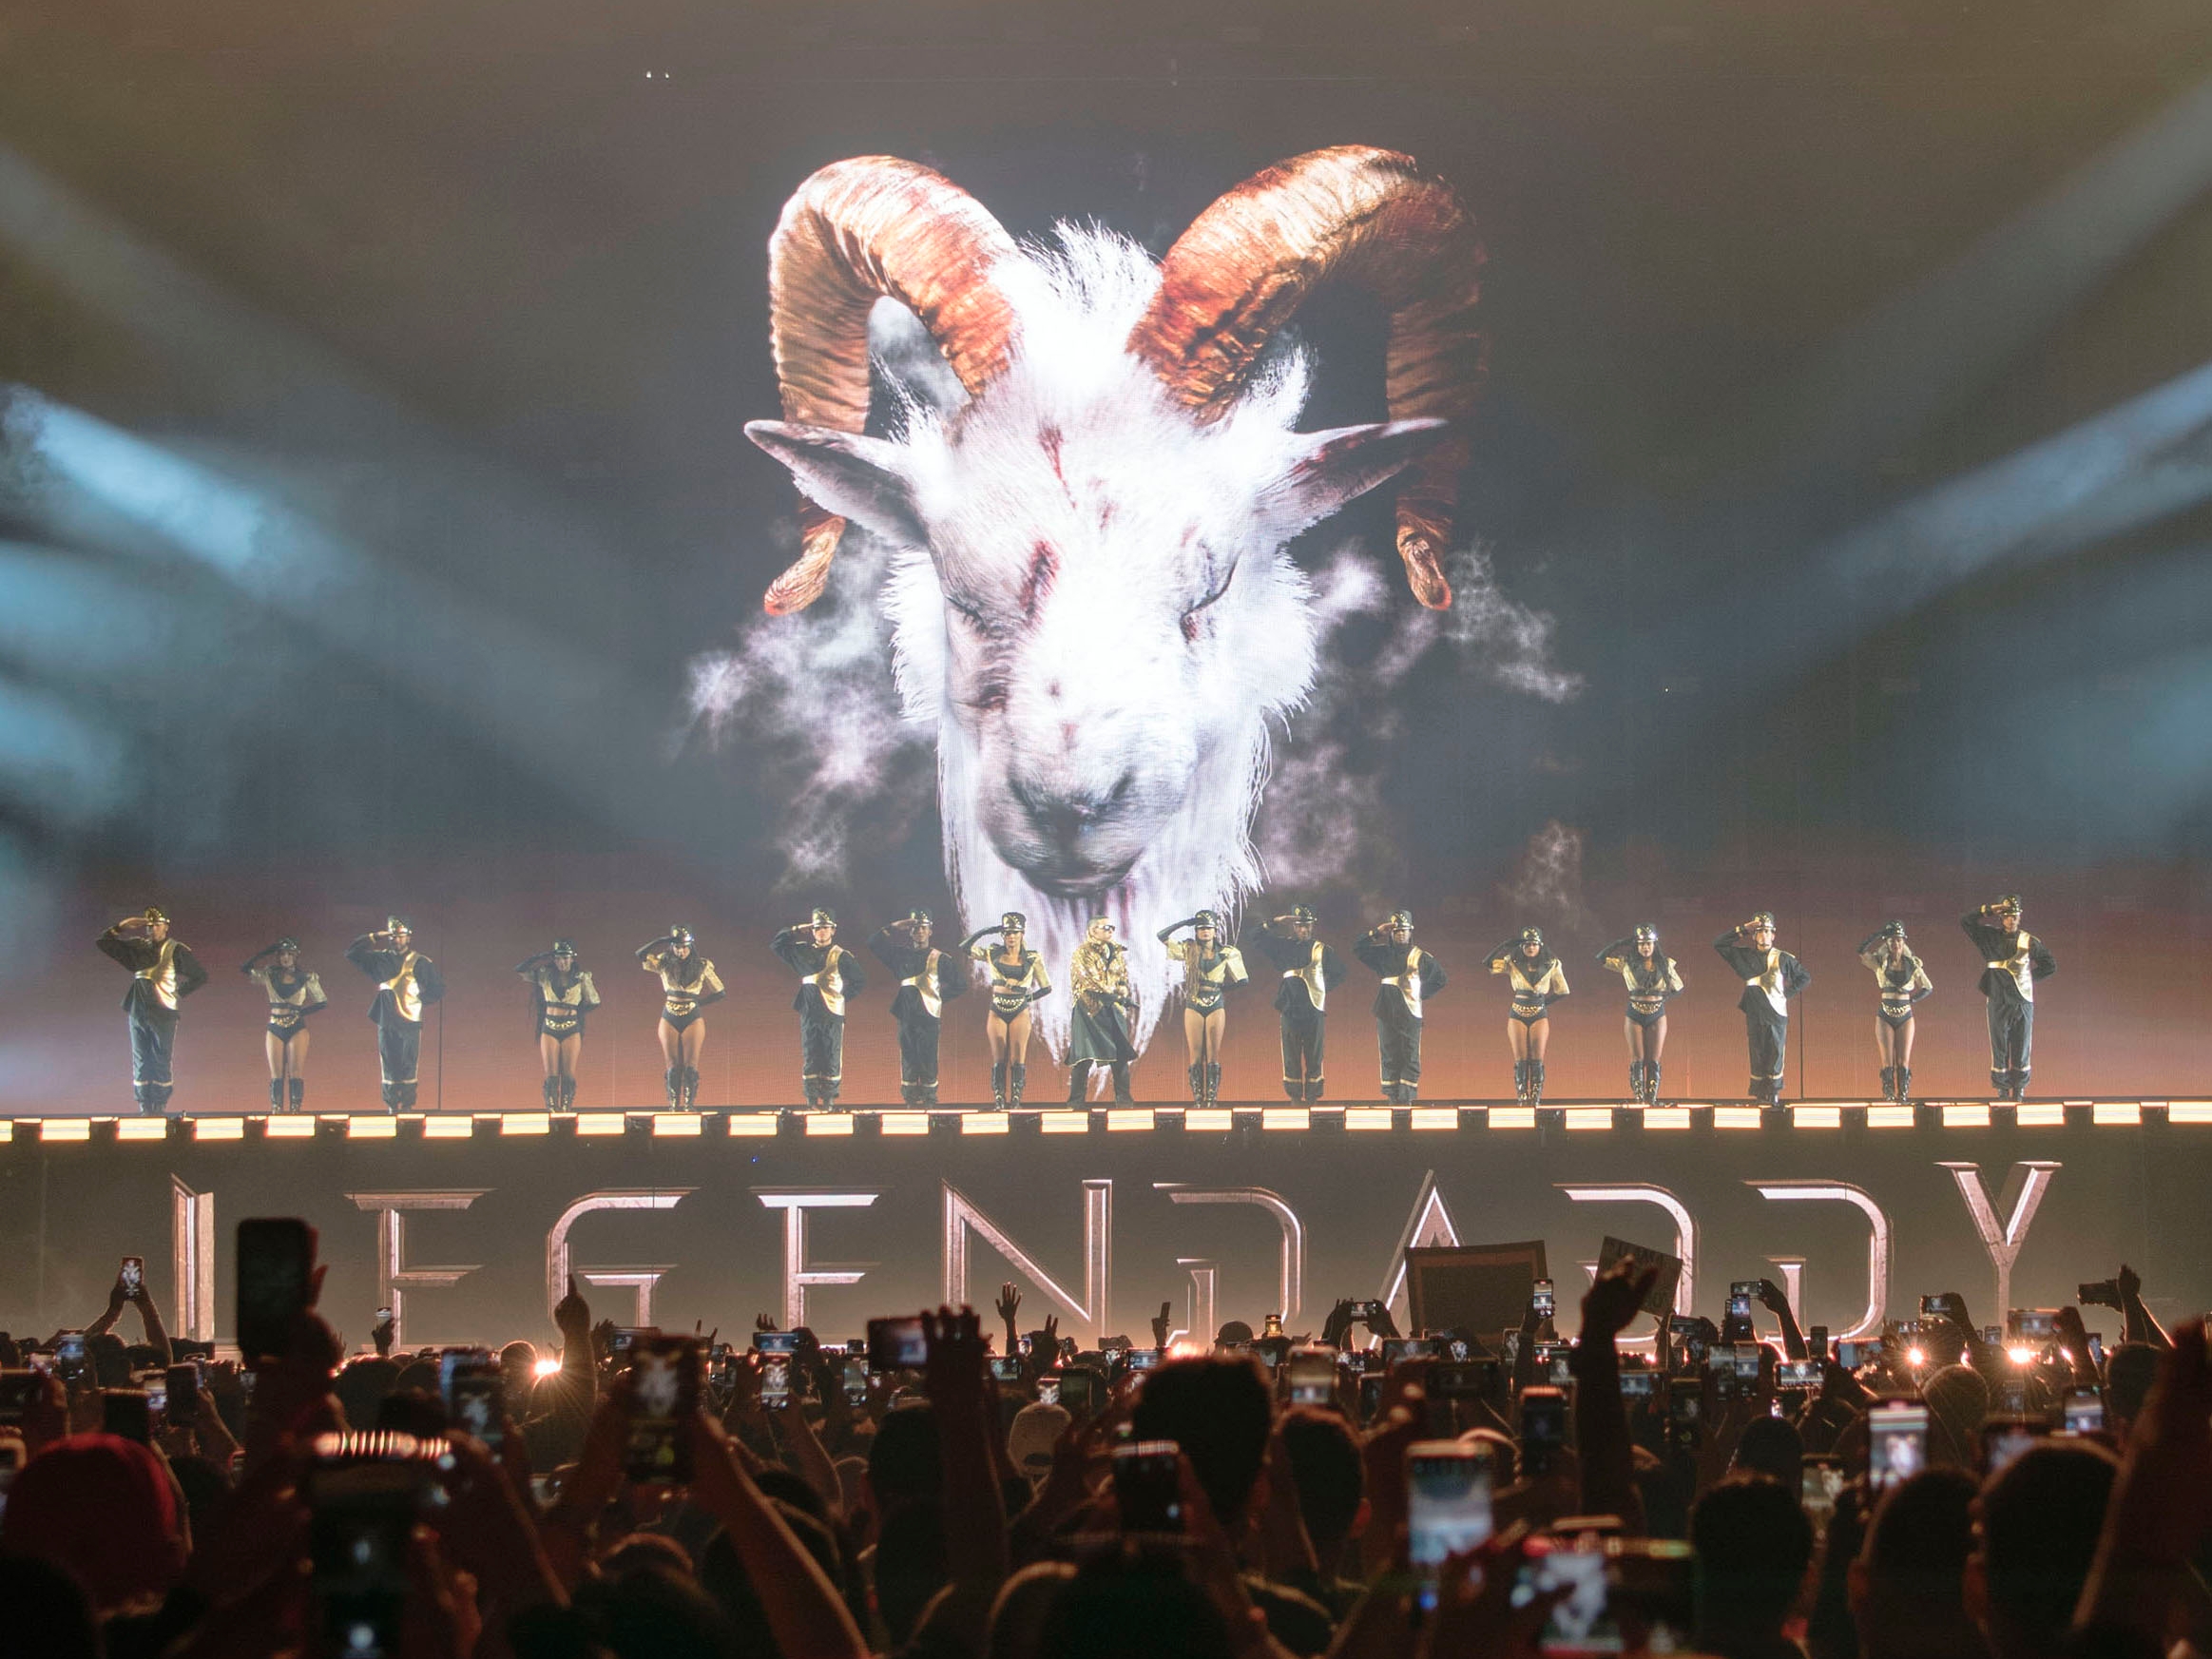 Qué significa la cabra y otros símbolos que ha utilizado Daddy Yankee en su  discografía? | Música | Entretenimiento | El Universo